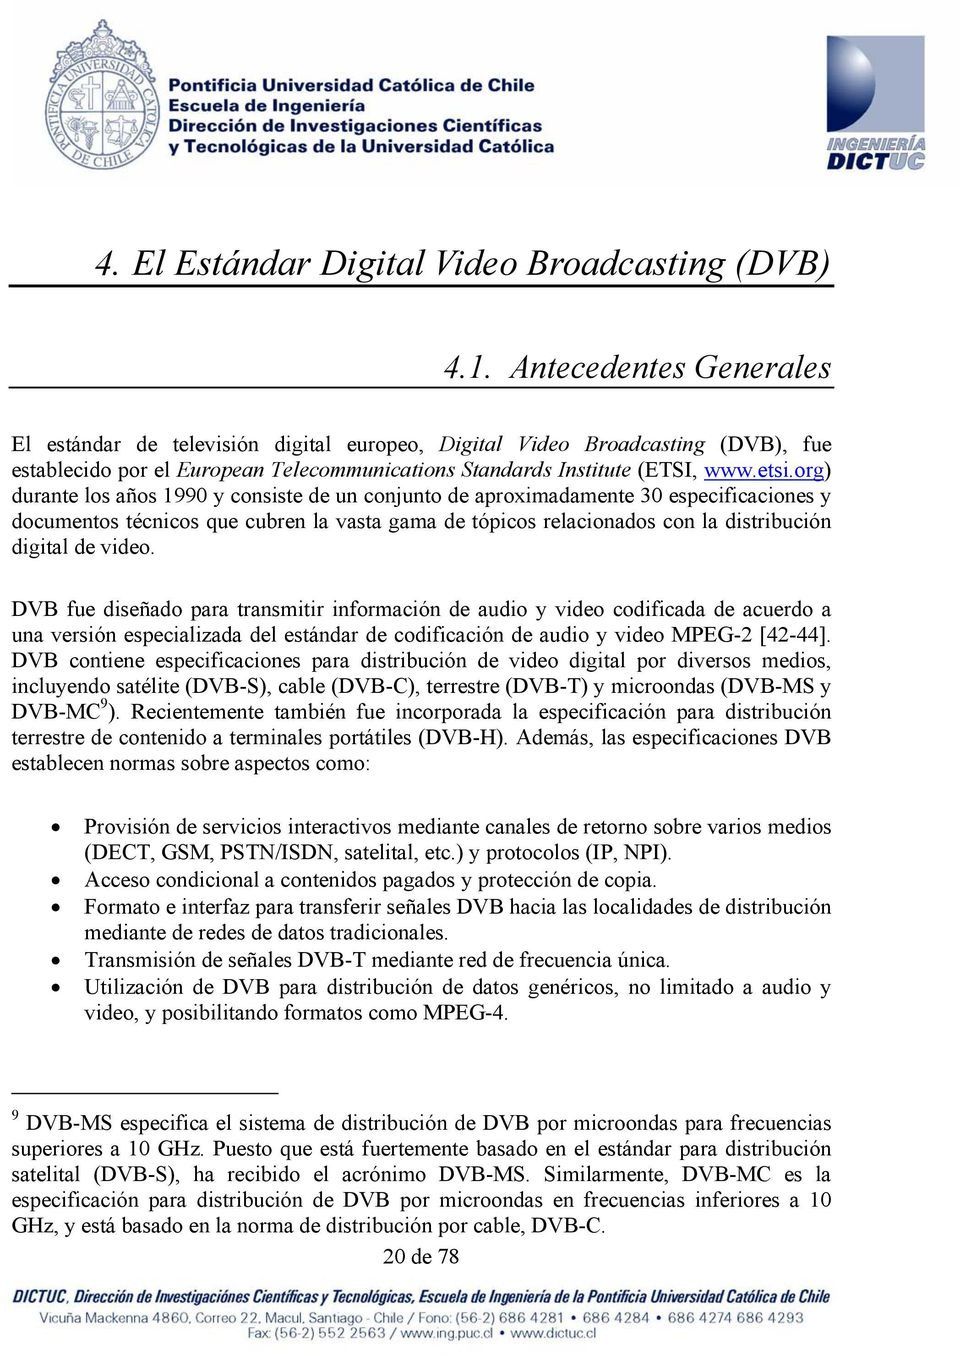 org) durante los años 1990 y consiste de un conjunto de aproximadamente 30 especificaciones y documentos técnicos que cubren la vasta gama de tópicos relacionados con la distribución digital de video.